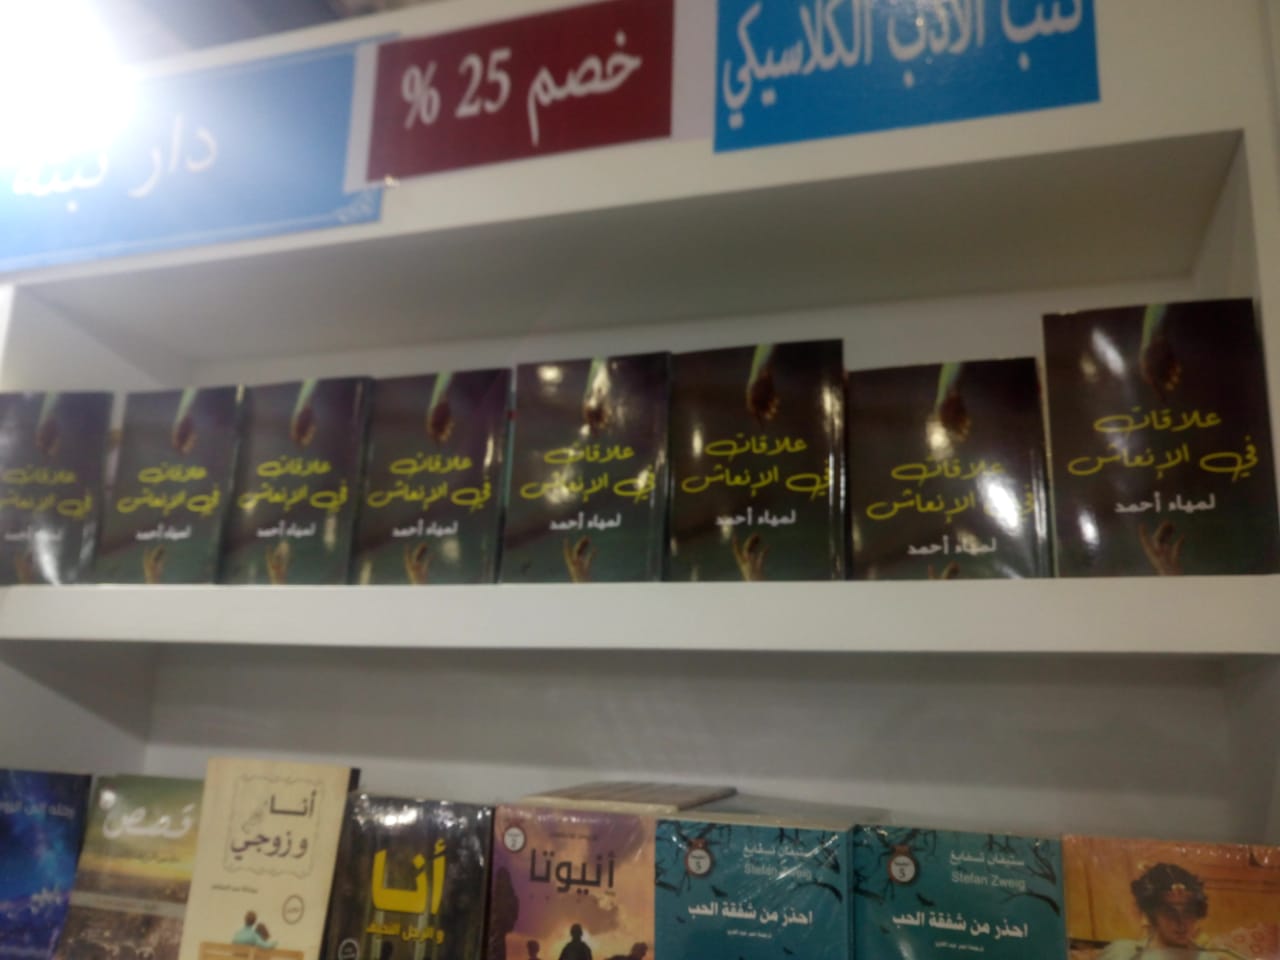 الكتب الأكثر مبيعا فى معرض القاهرة للكتاب (26)